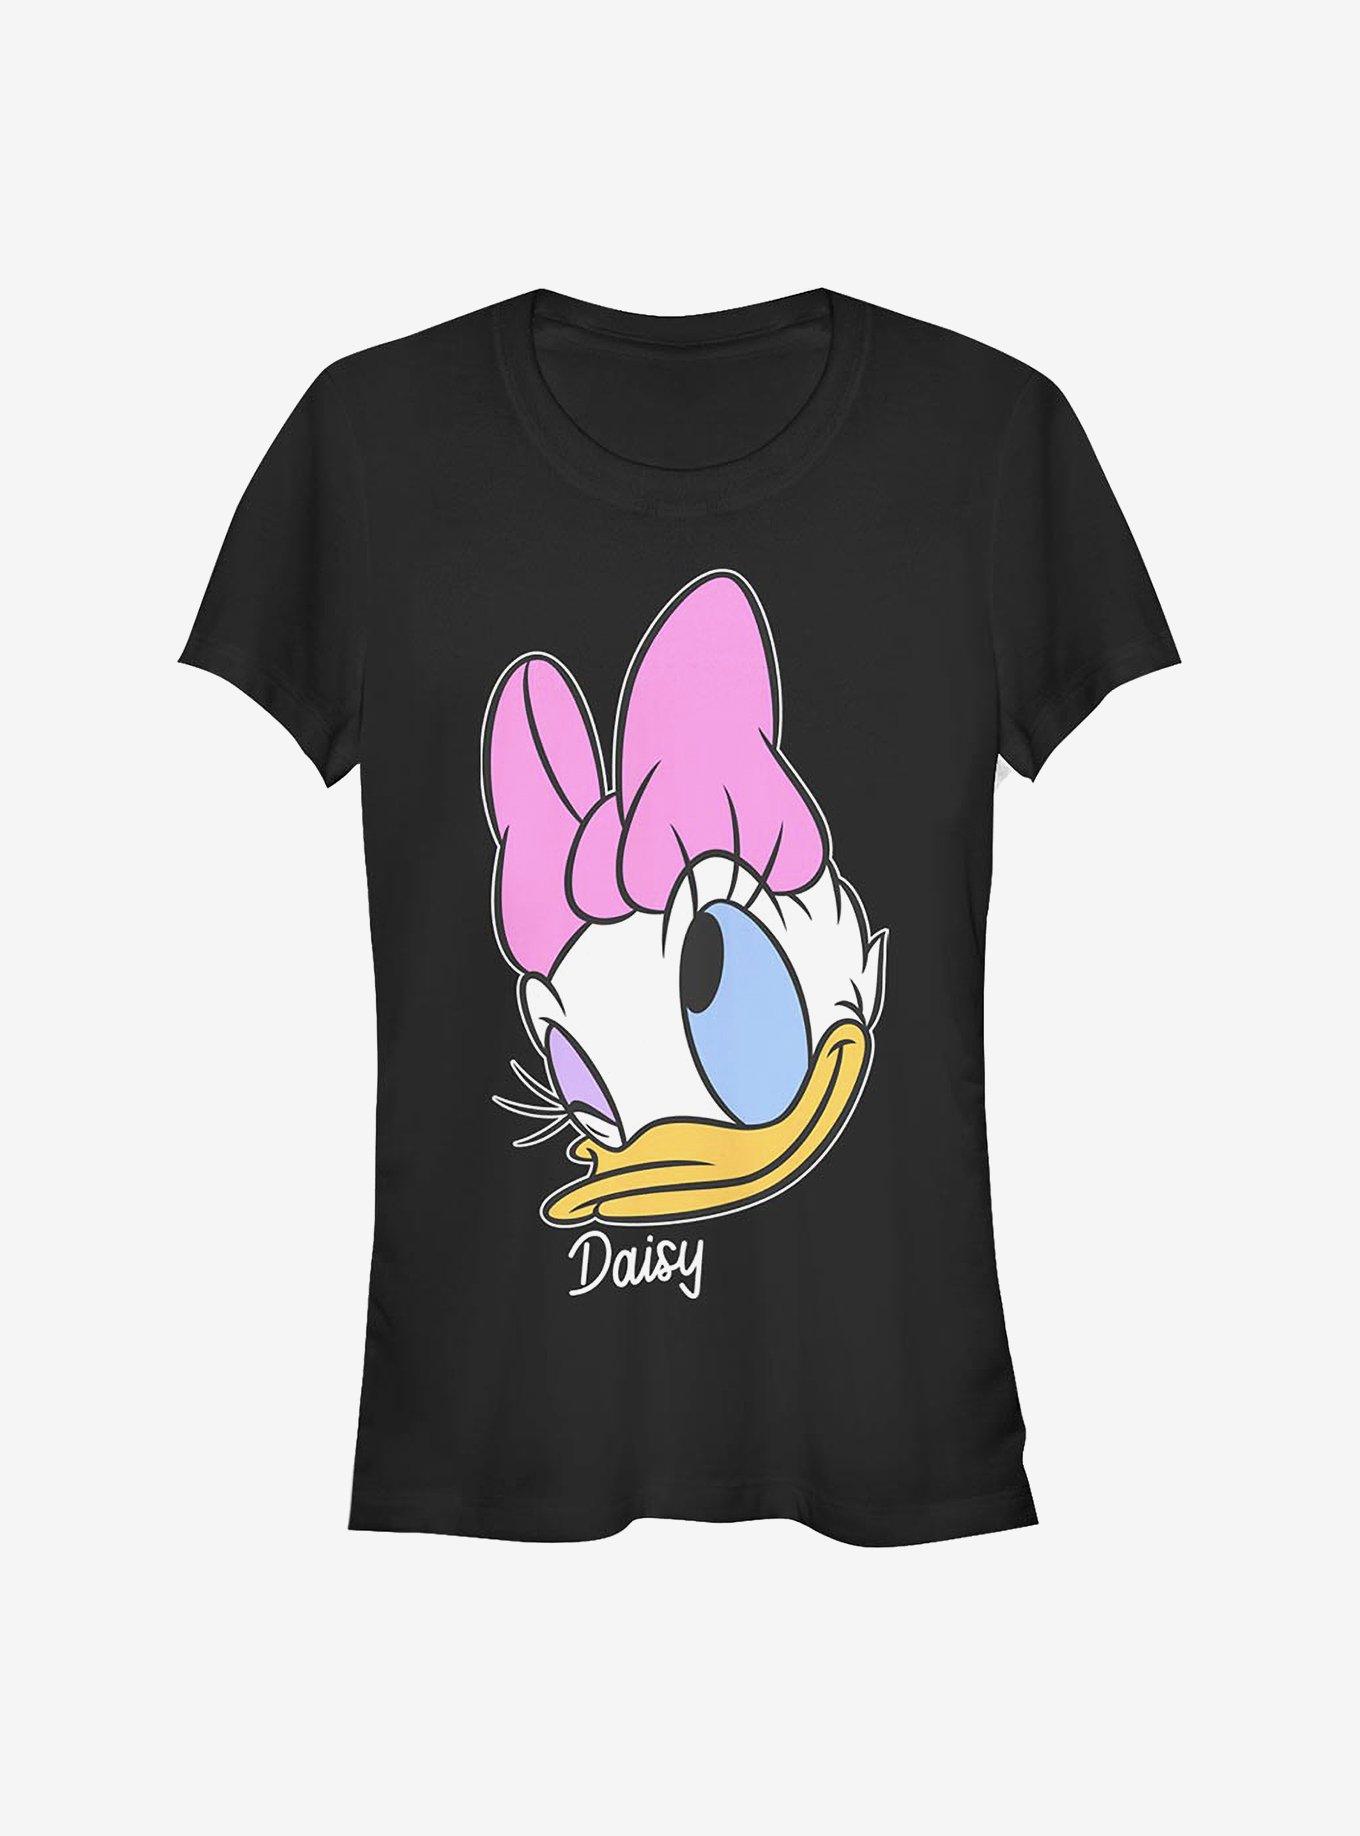 disney daisy duck face